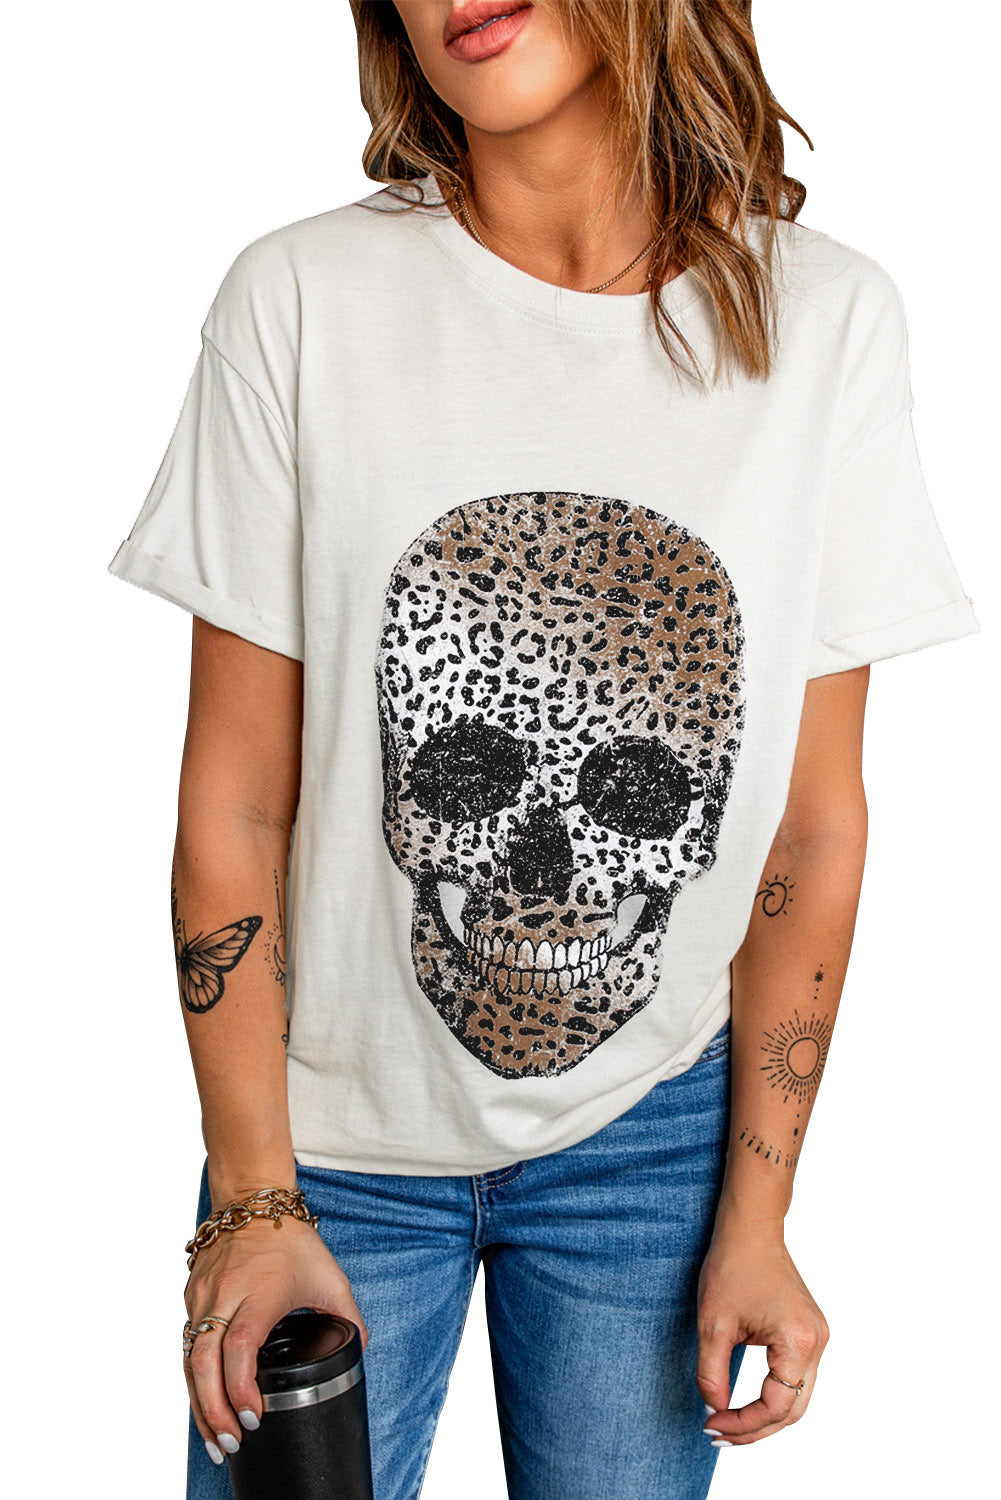 Short Sleeve Leopard Skull Graphic White T Shirt